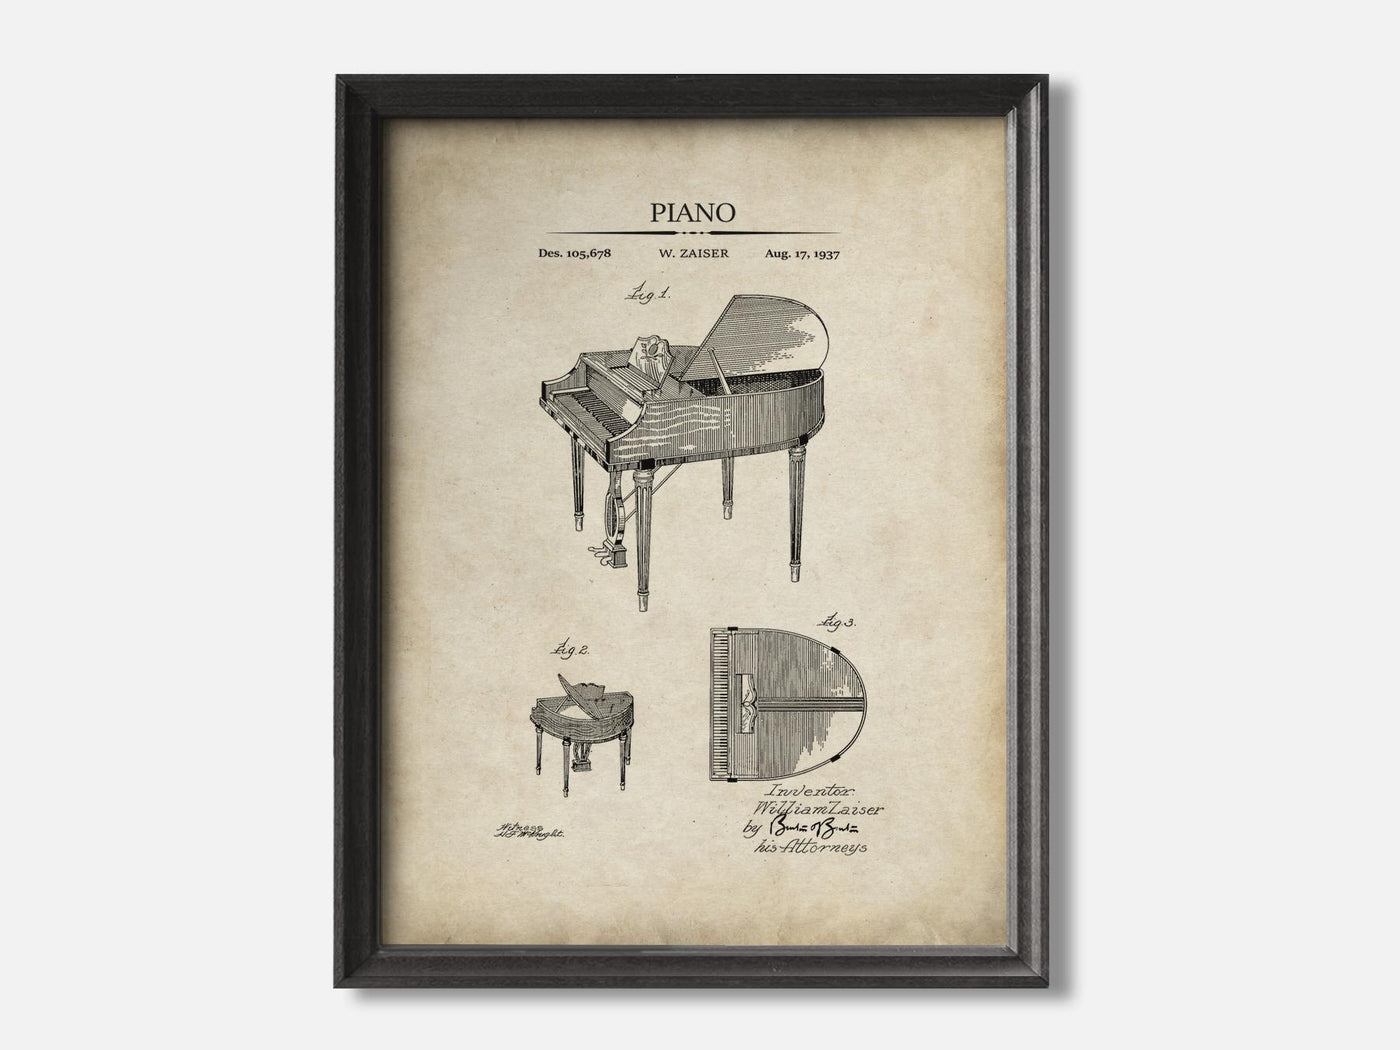 Piano Patent Art Print mockup - A_t10117.1-V1-PC_F+B-SS_1-PS_5x7-C_par variant